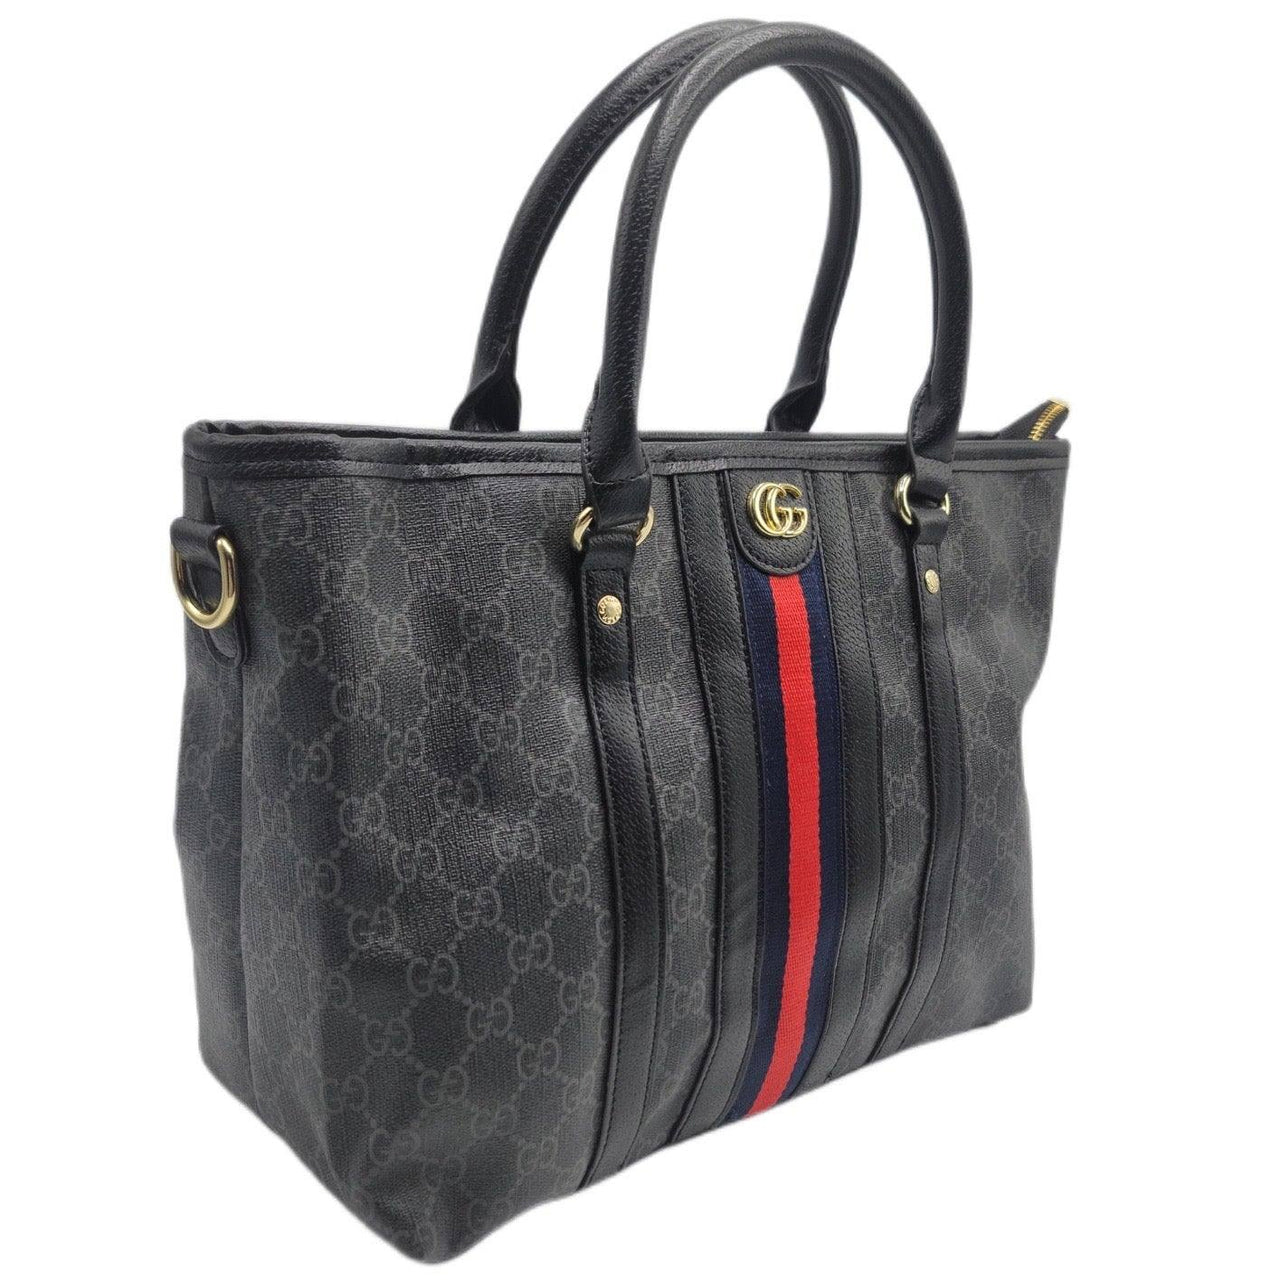 The Bag Couture Handbags, Wallets & Cases Gucci Handbag Classic Tote Black 2